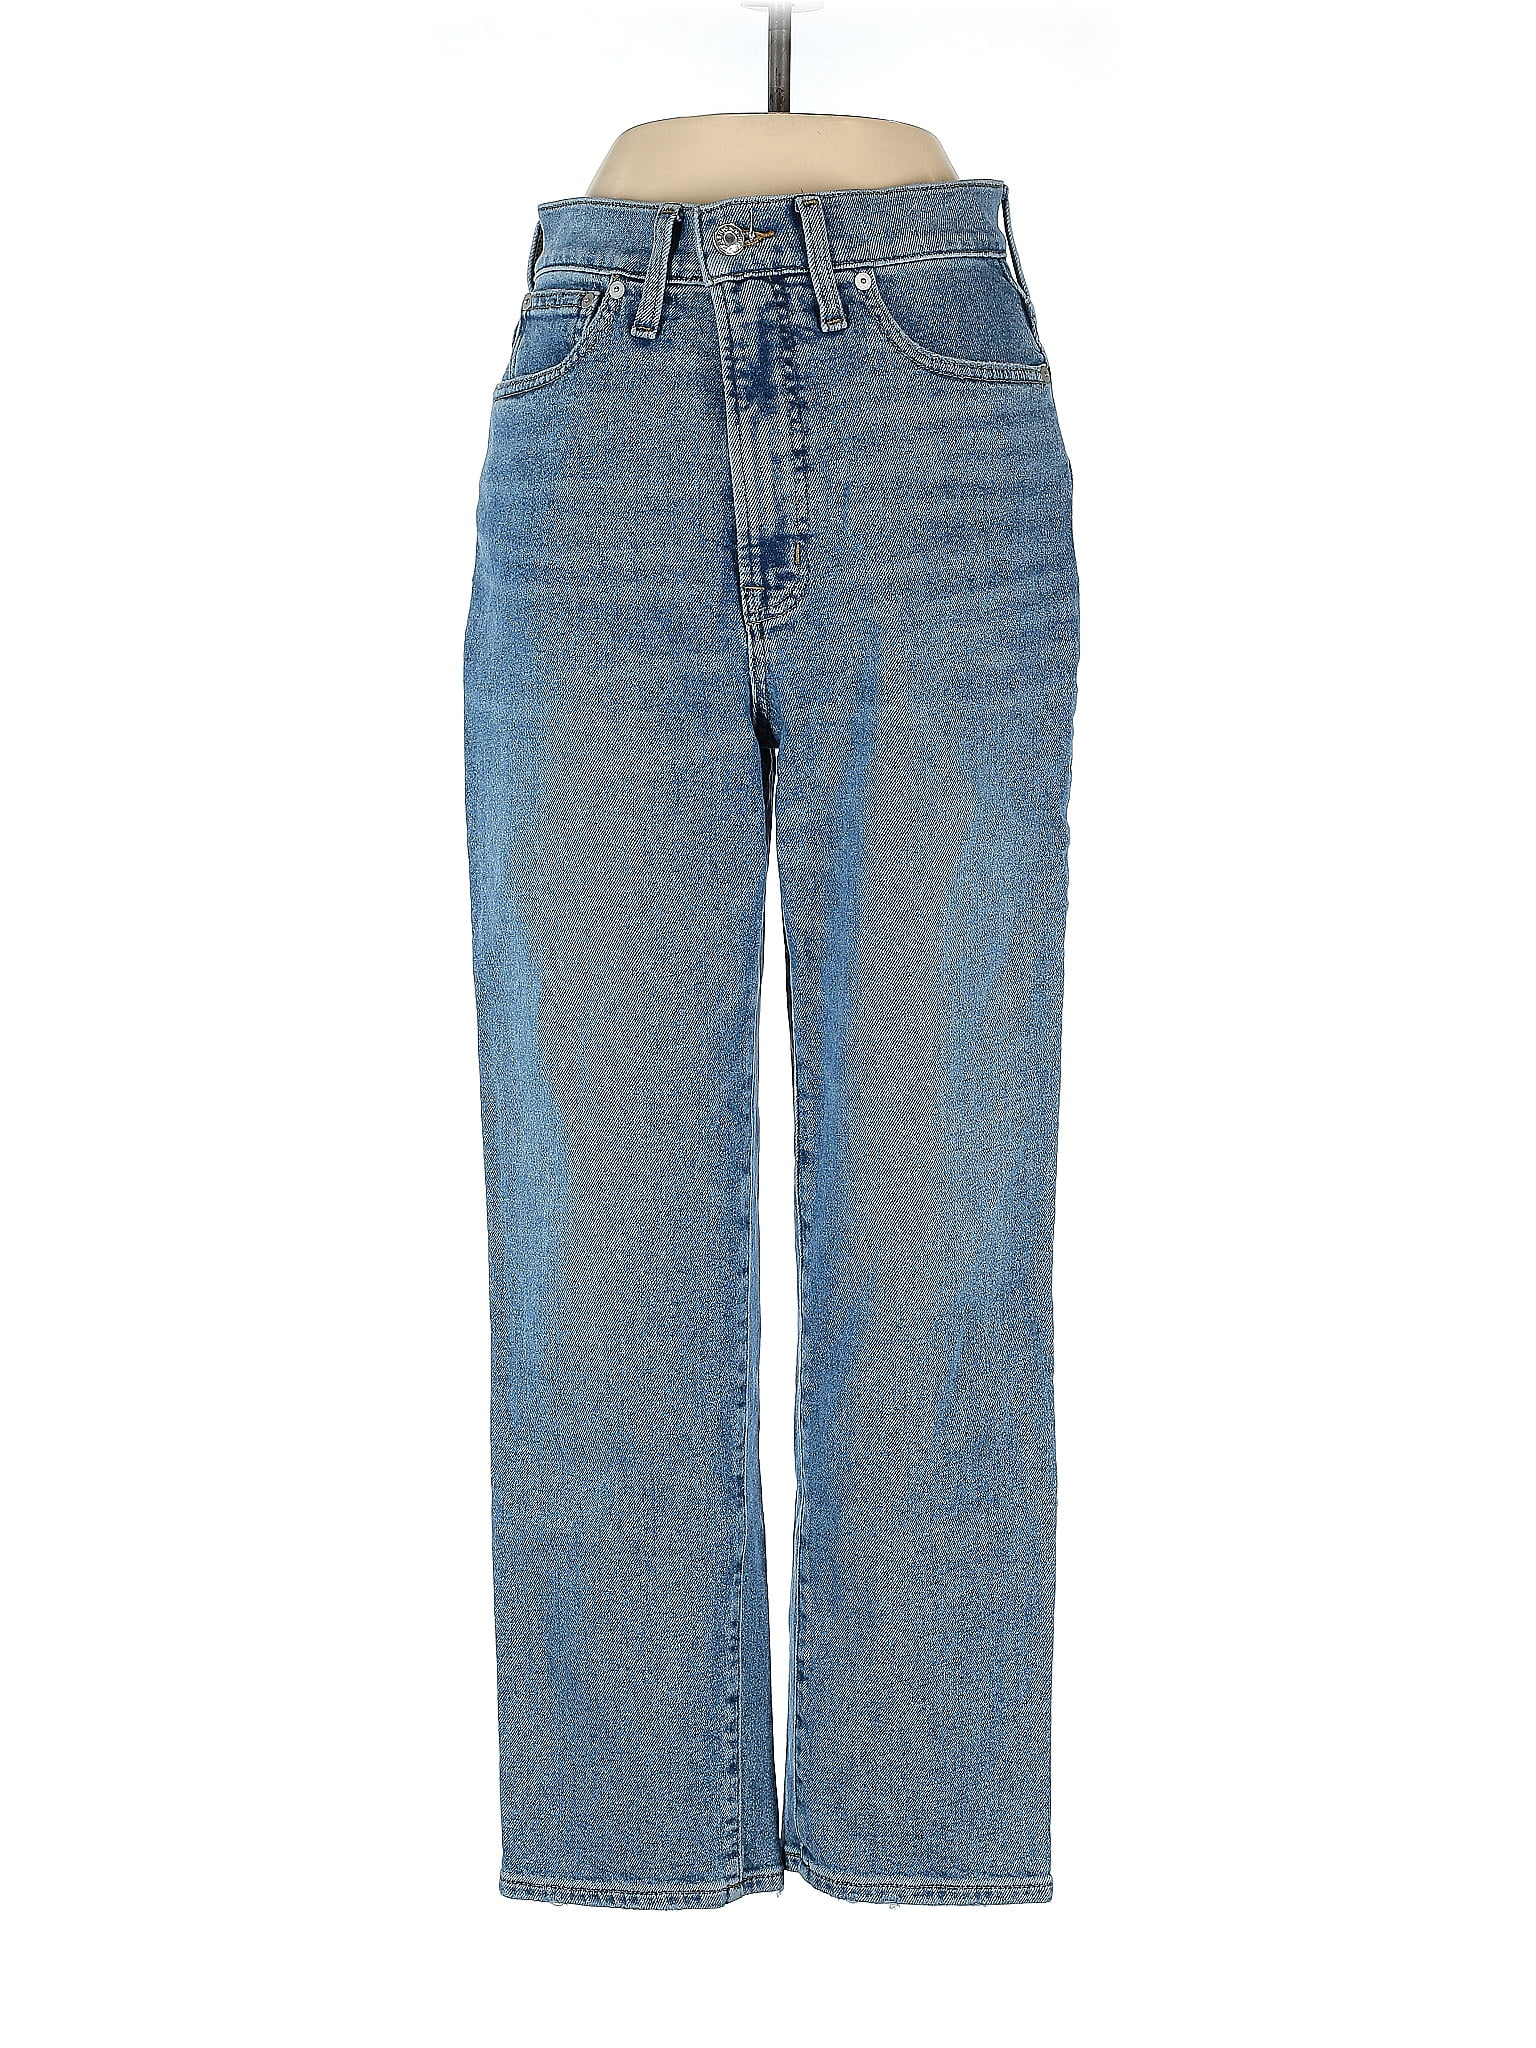 Madewell Blue Jeans 27 Waist - 72% off | thredUP